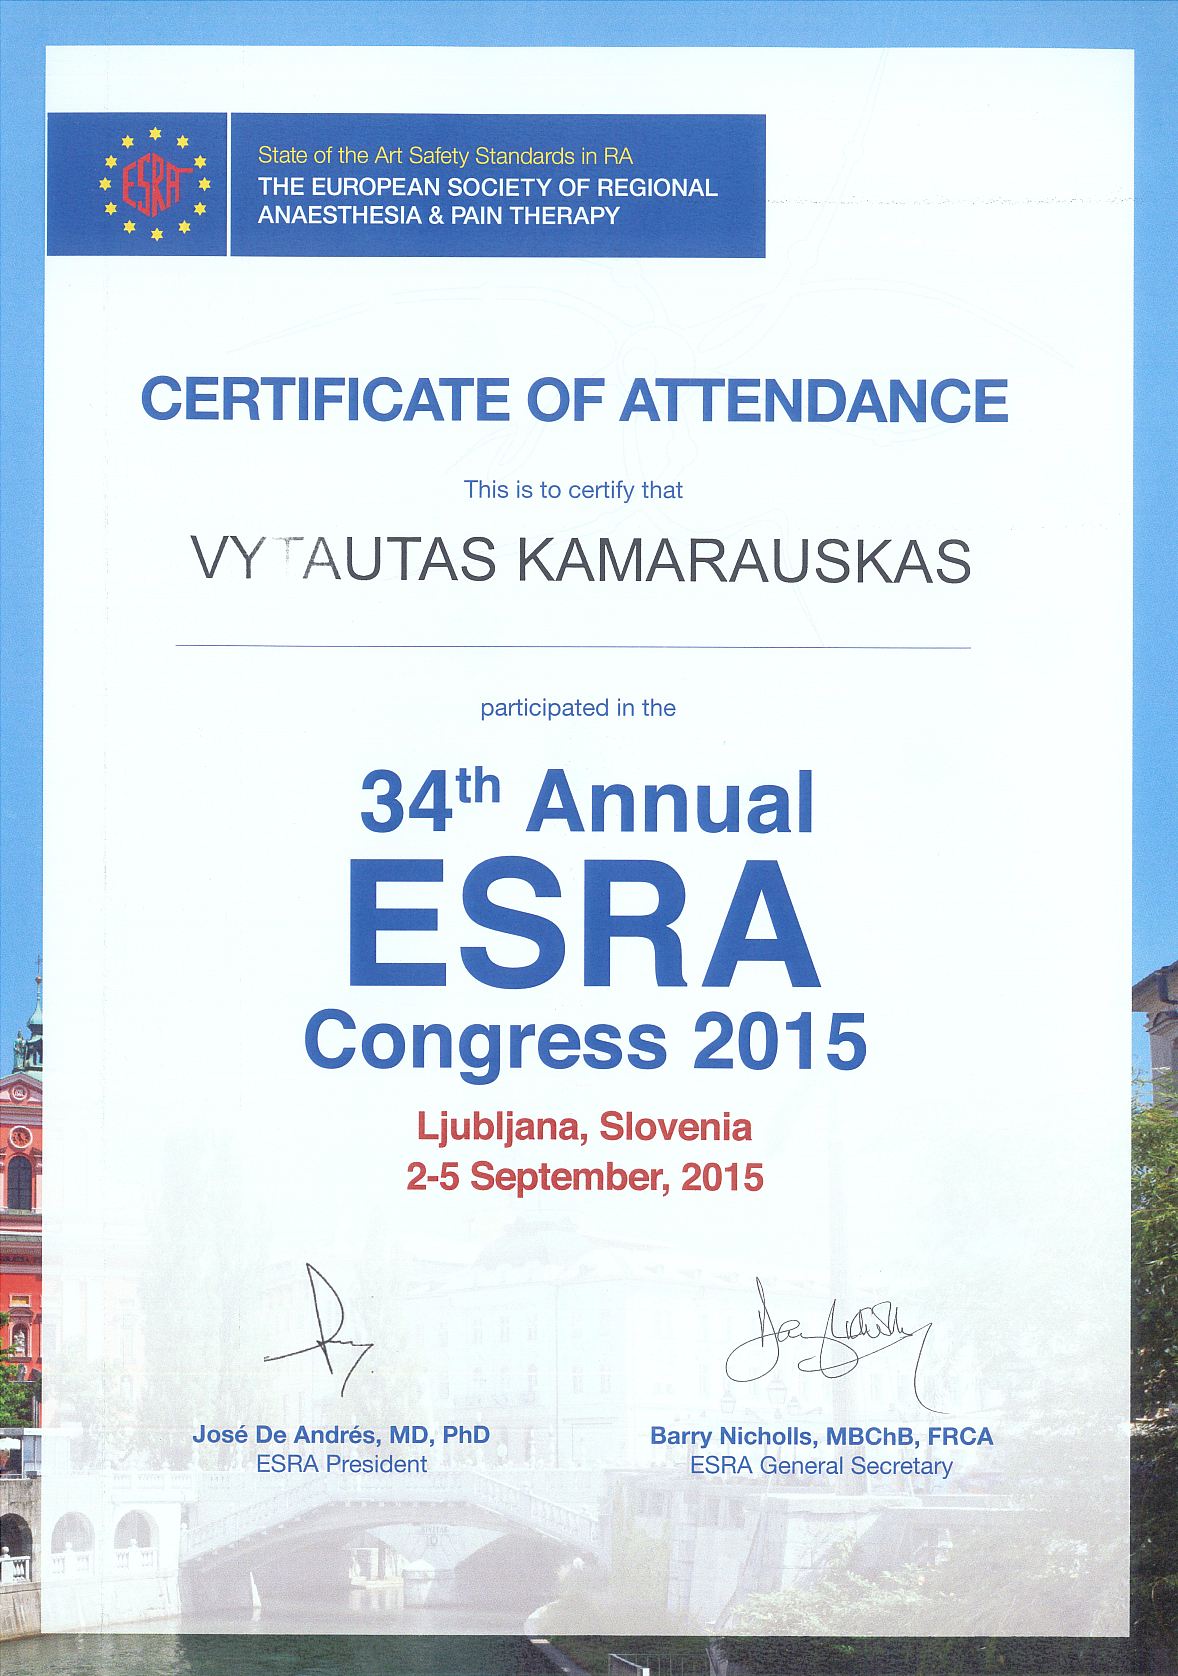 34th Annual ESRA Congress 2015 in Ljubljana, Slovenia 2-5 September